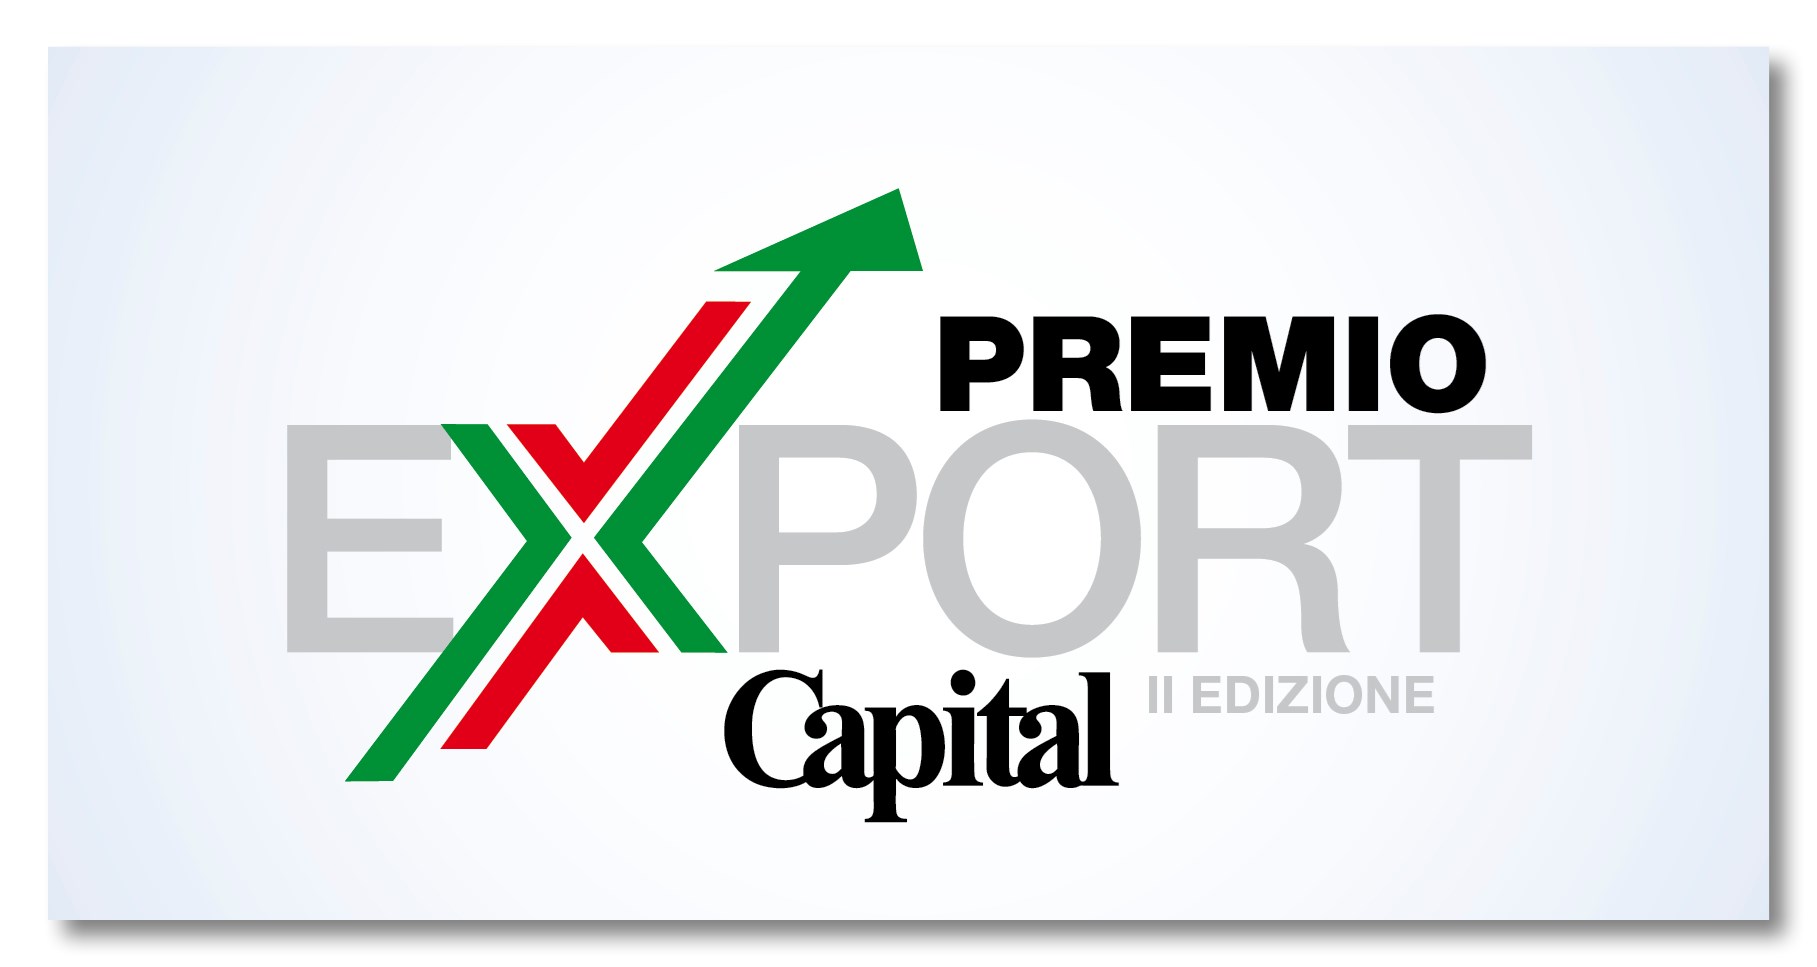 Premio Export Capital 